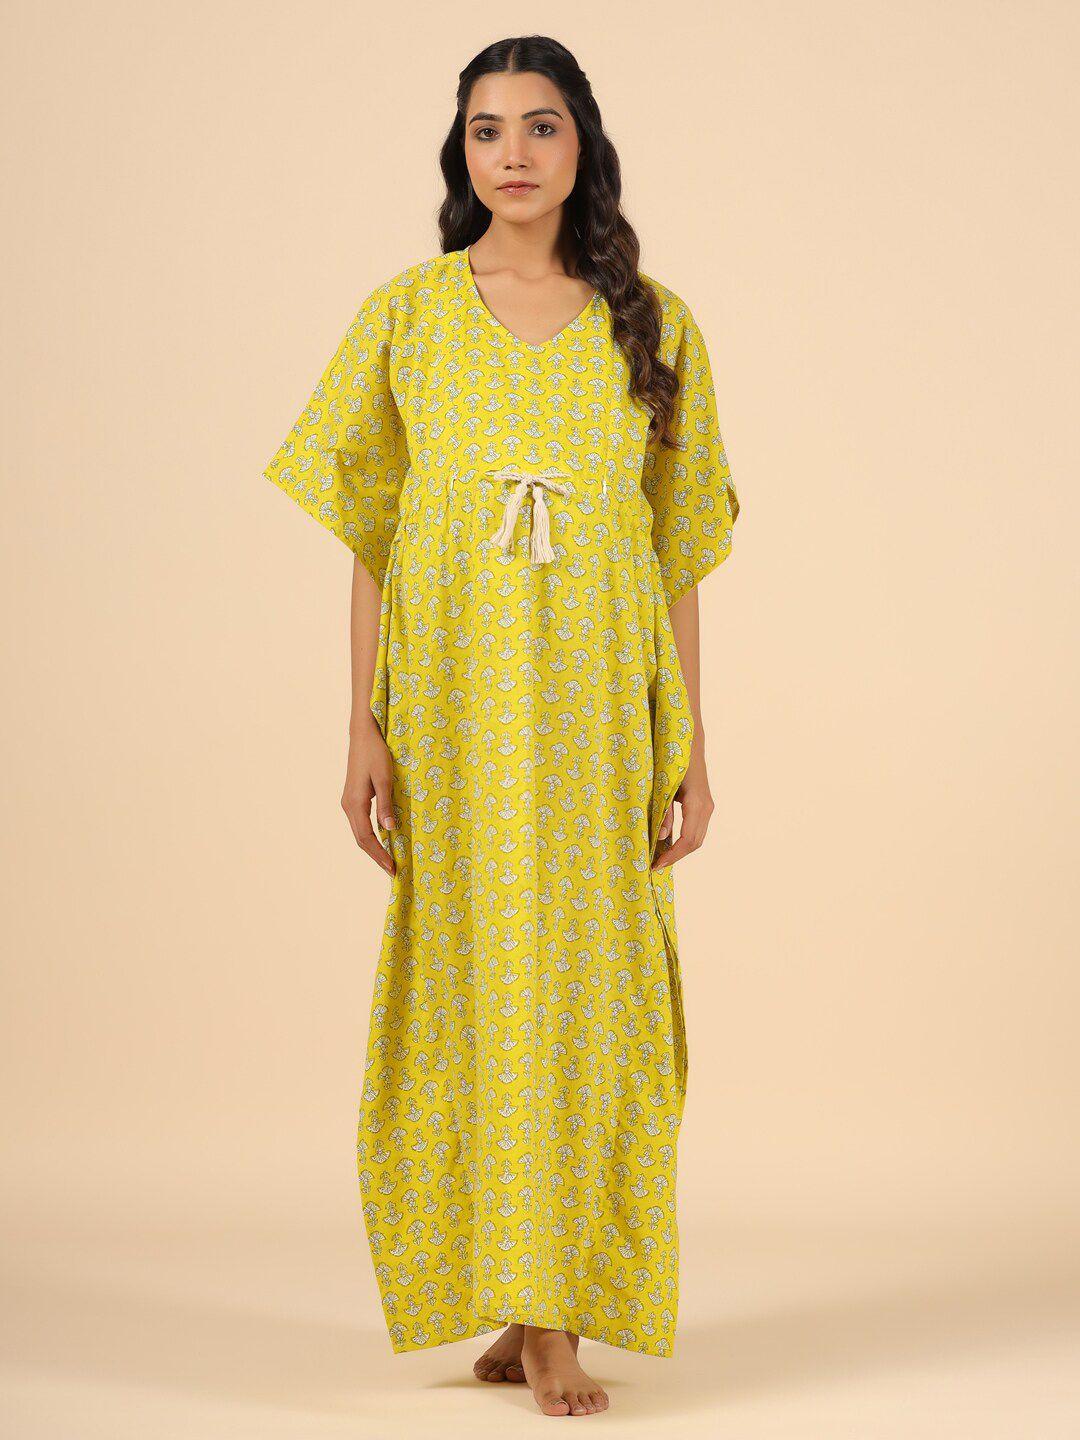 ikk-kudi-by-seerat-printed-pure-cotton-maternity-maxi-kaftan-nightdress